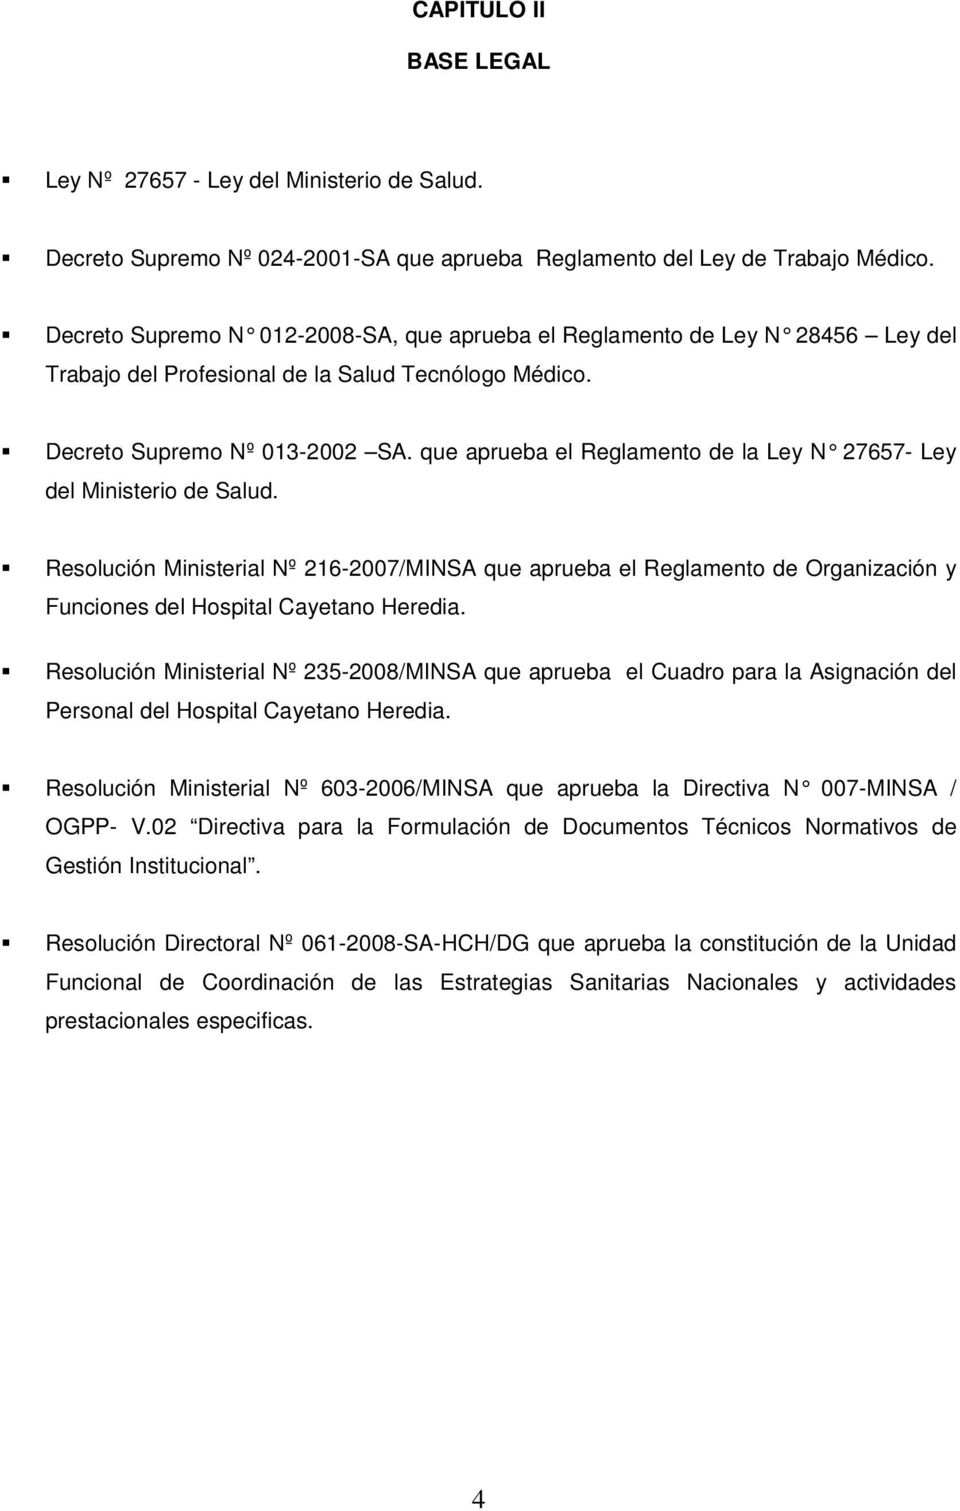 que aprueba el Reglamento de la Ley N 27657- Ley del Ministerio de Salud. Resolución Ministerial Nº 216-2007/MINSA que aprueba el Reglamento de Organización y Funciones del Hospital Cayetano Heredia.